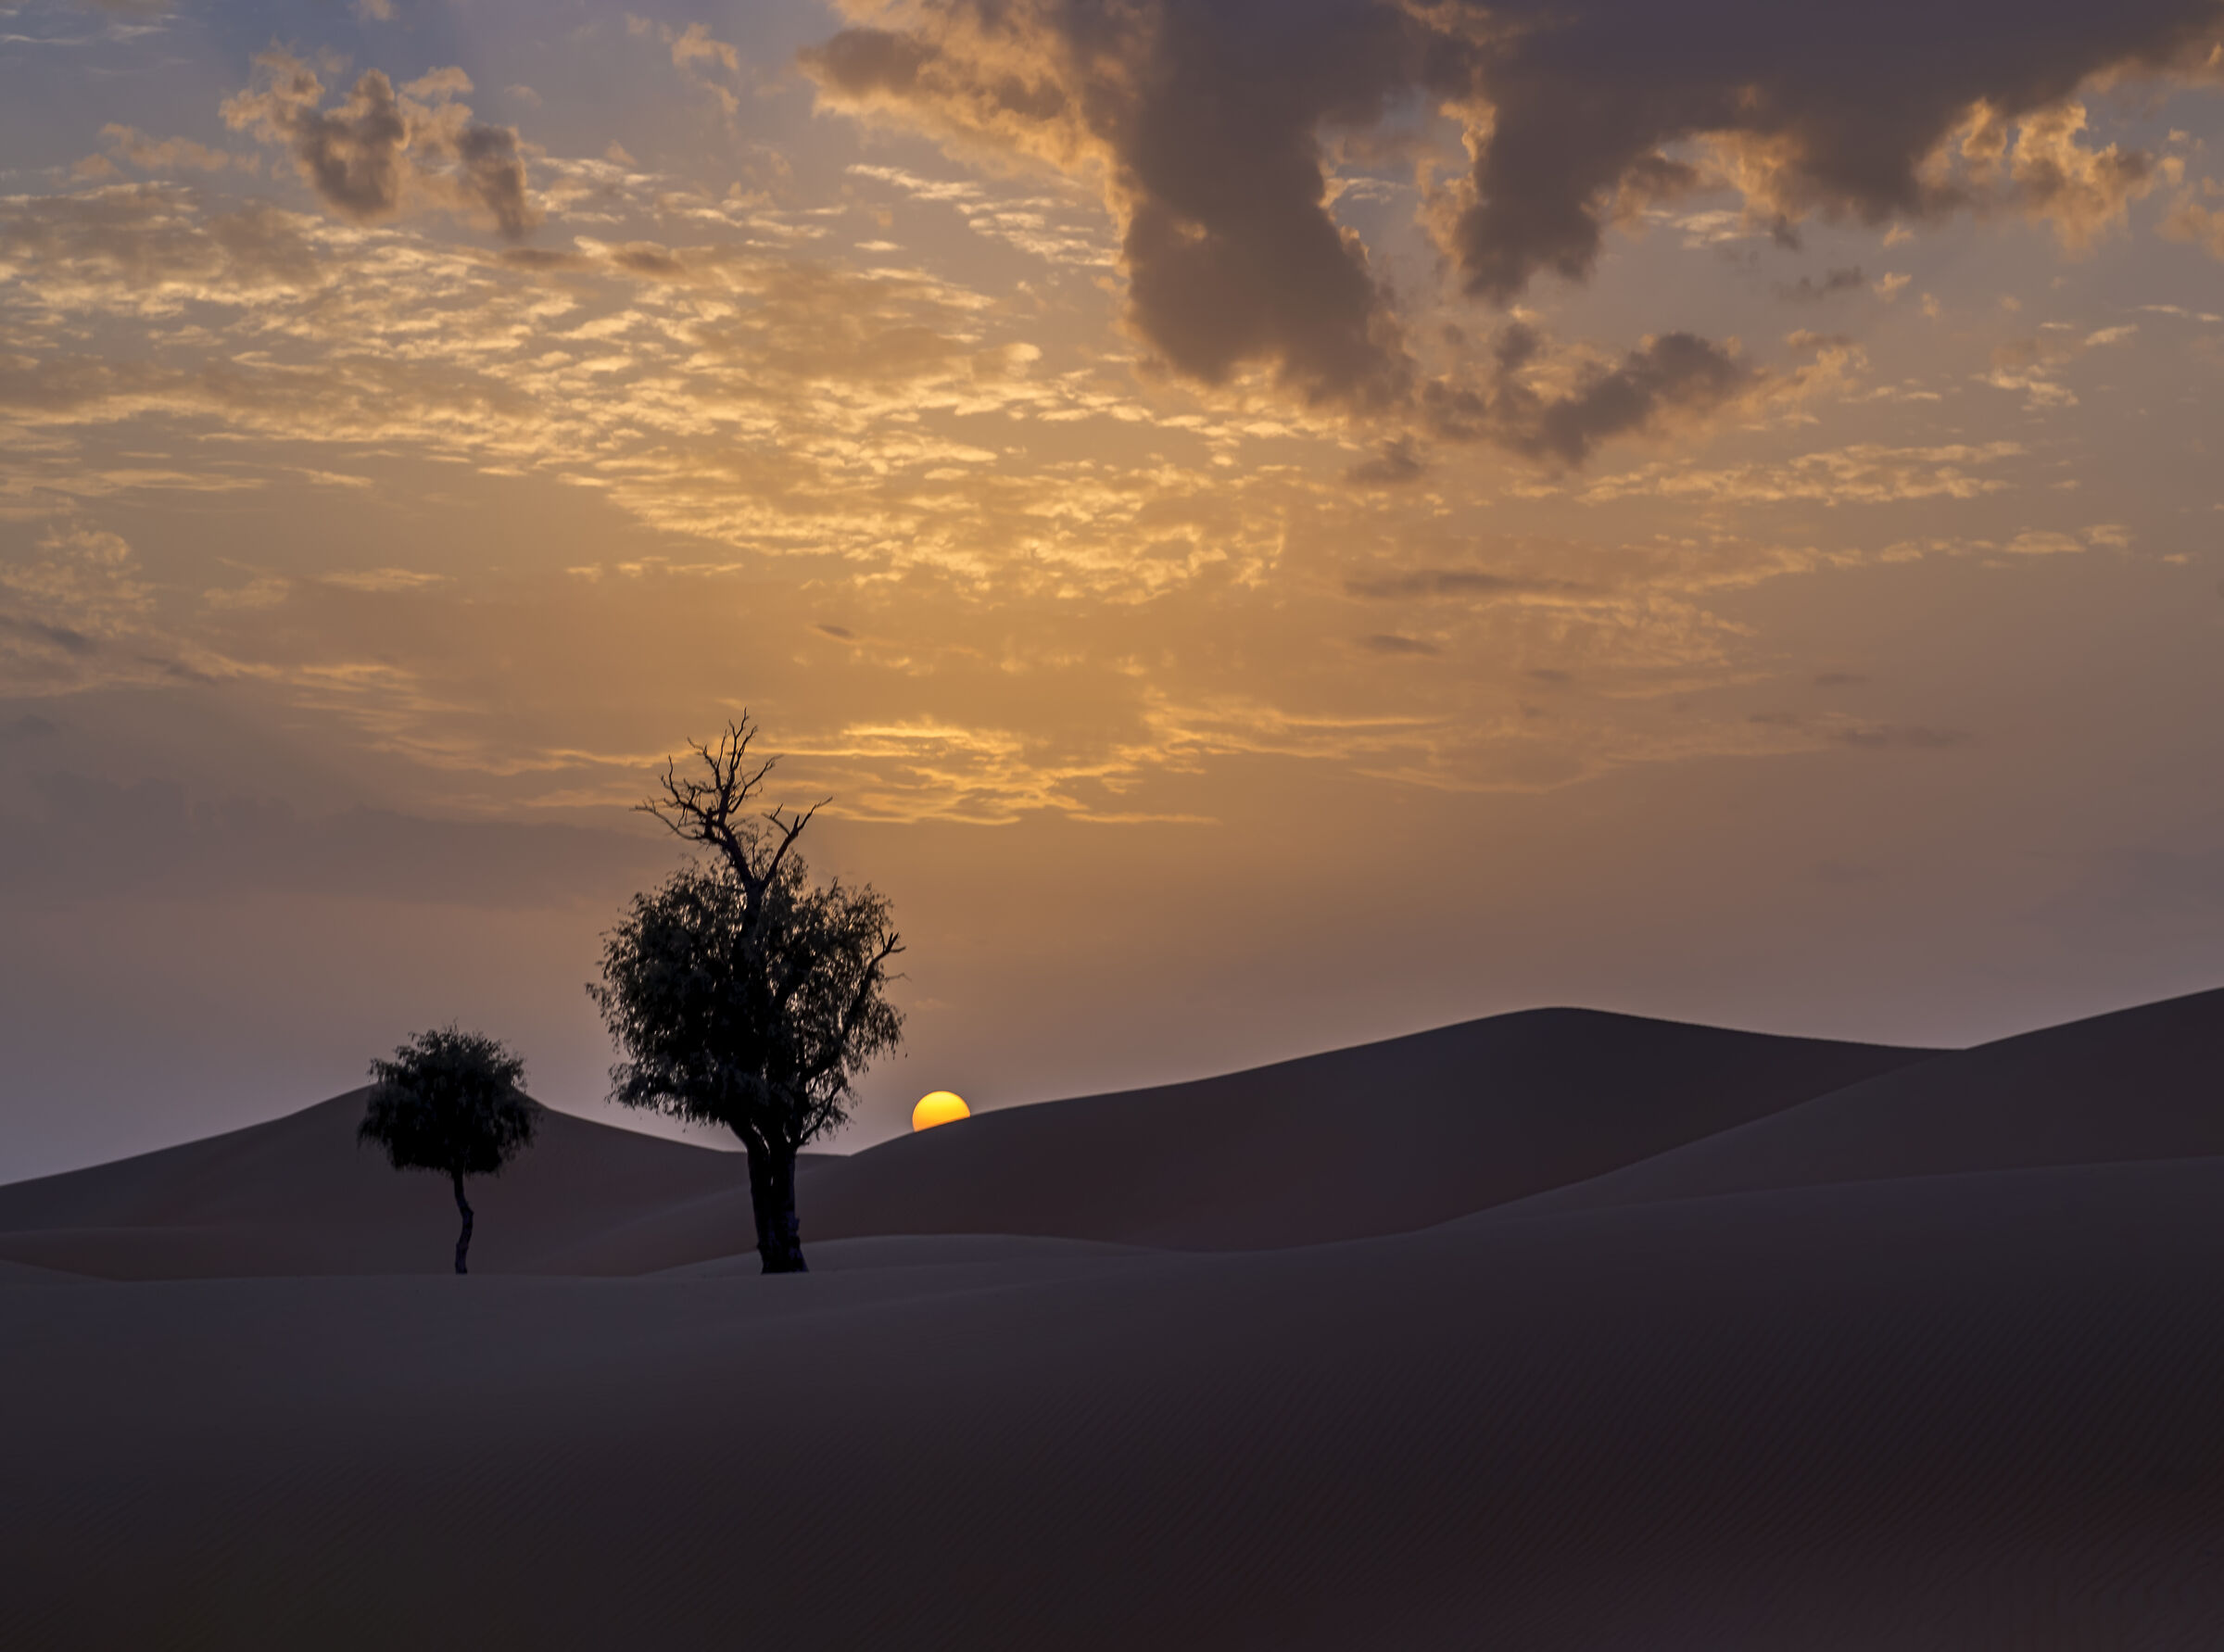 Sunset in the desert...